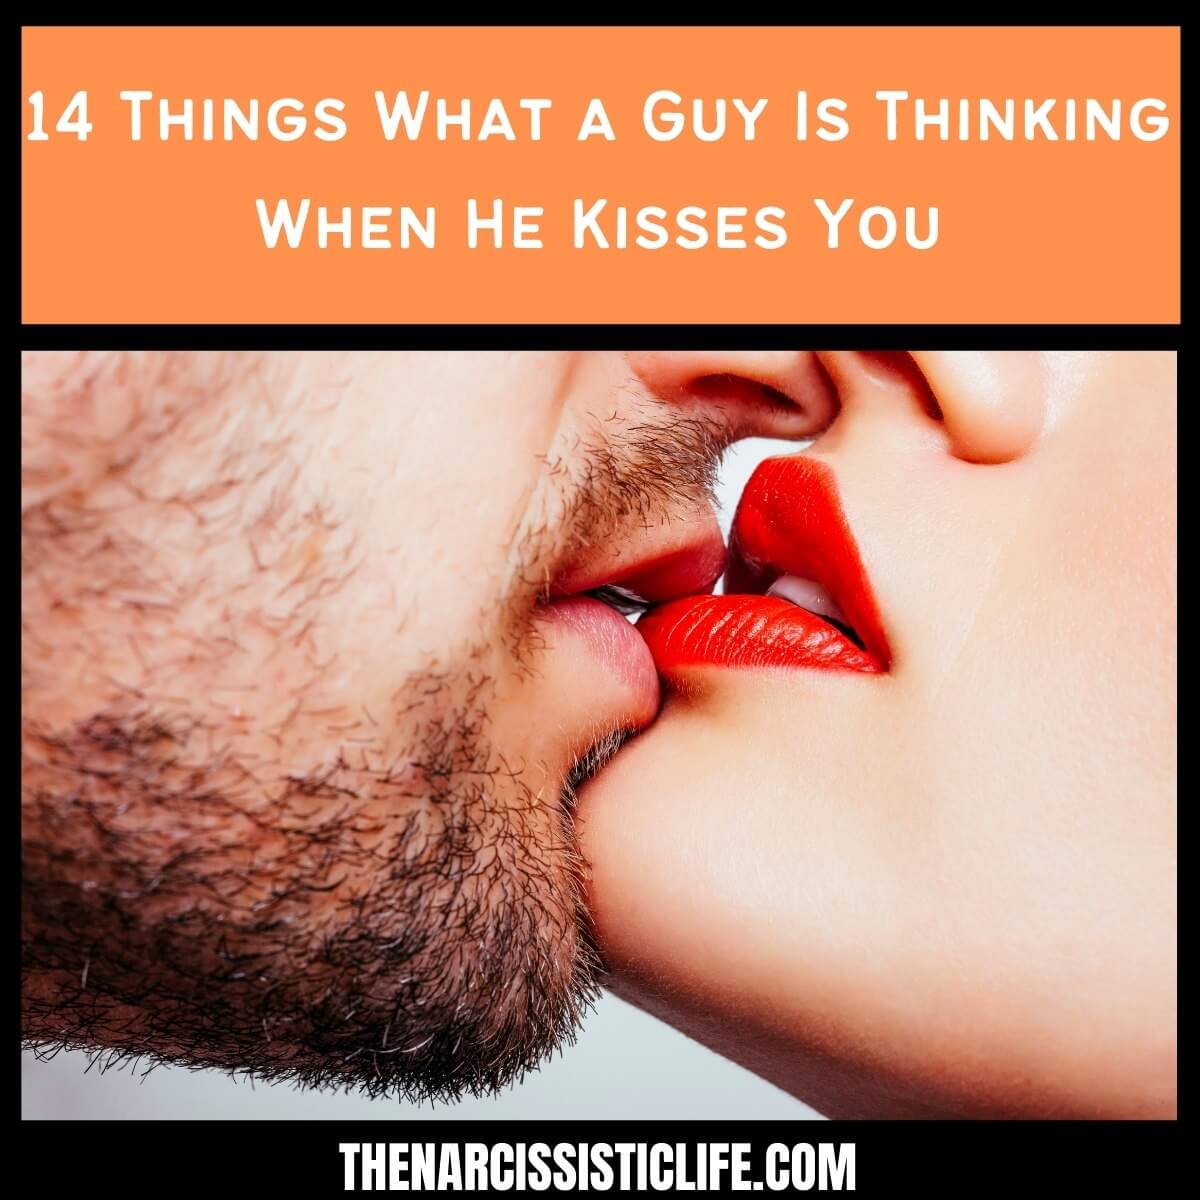 ผู้ชายคิดอะไรเมื่อเขาจูบคุณ (ข้อเท็จจริงทั้งหมด)